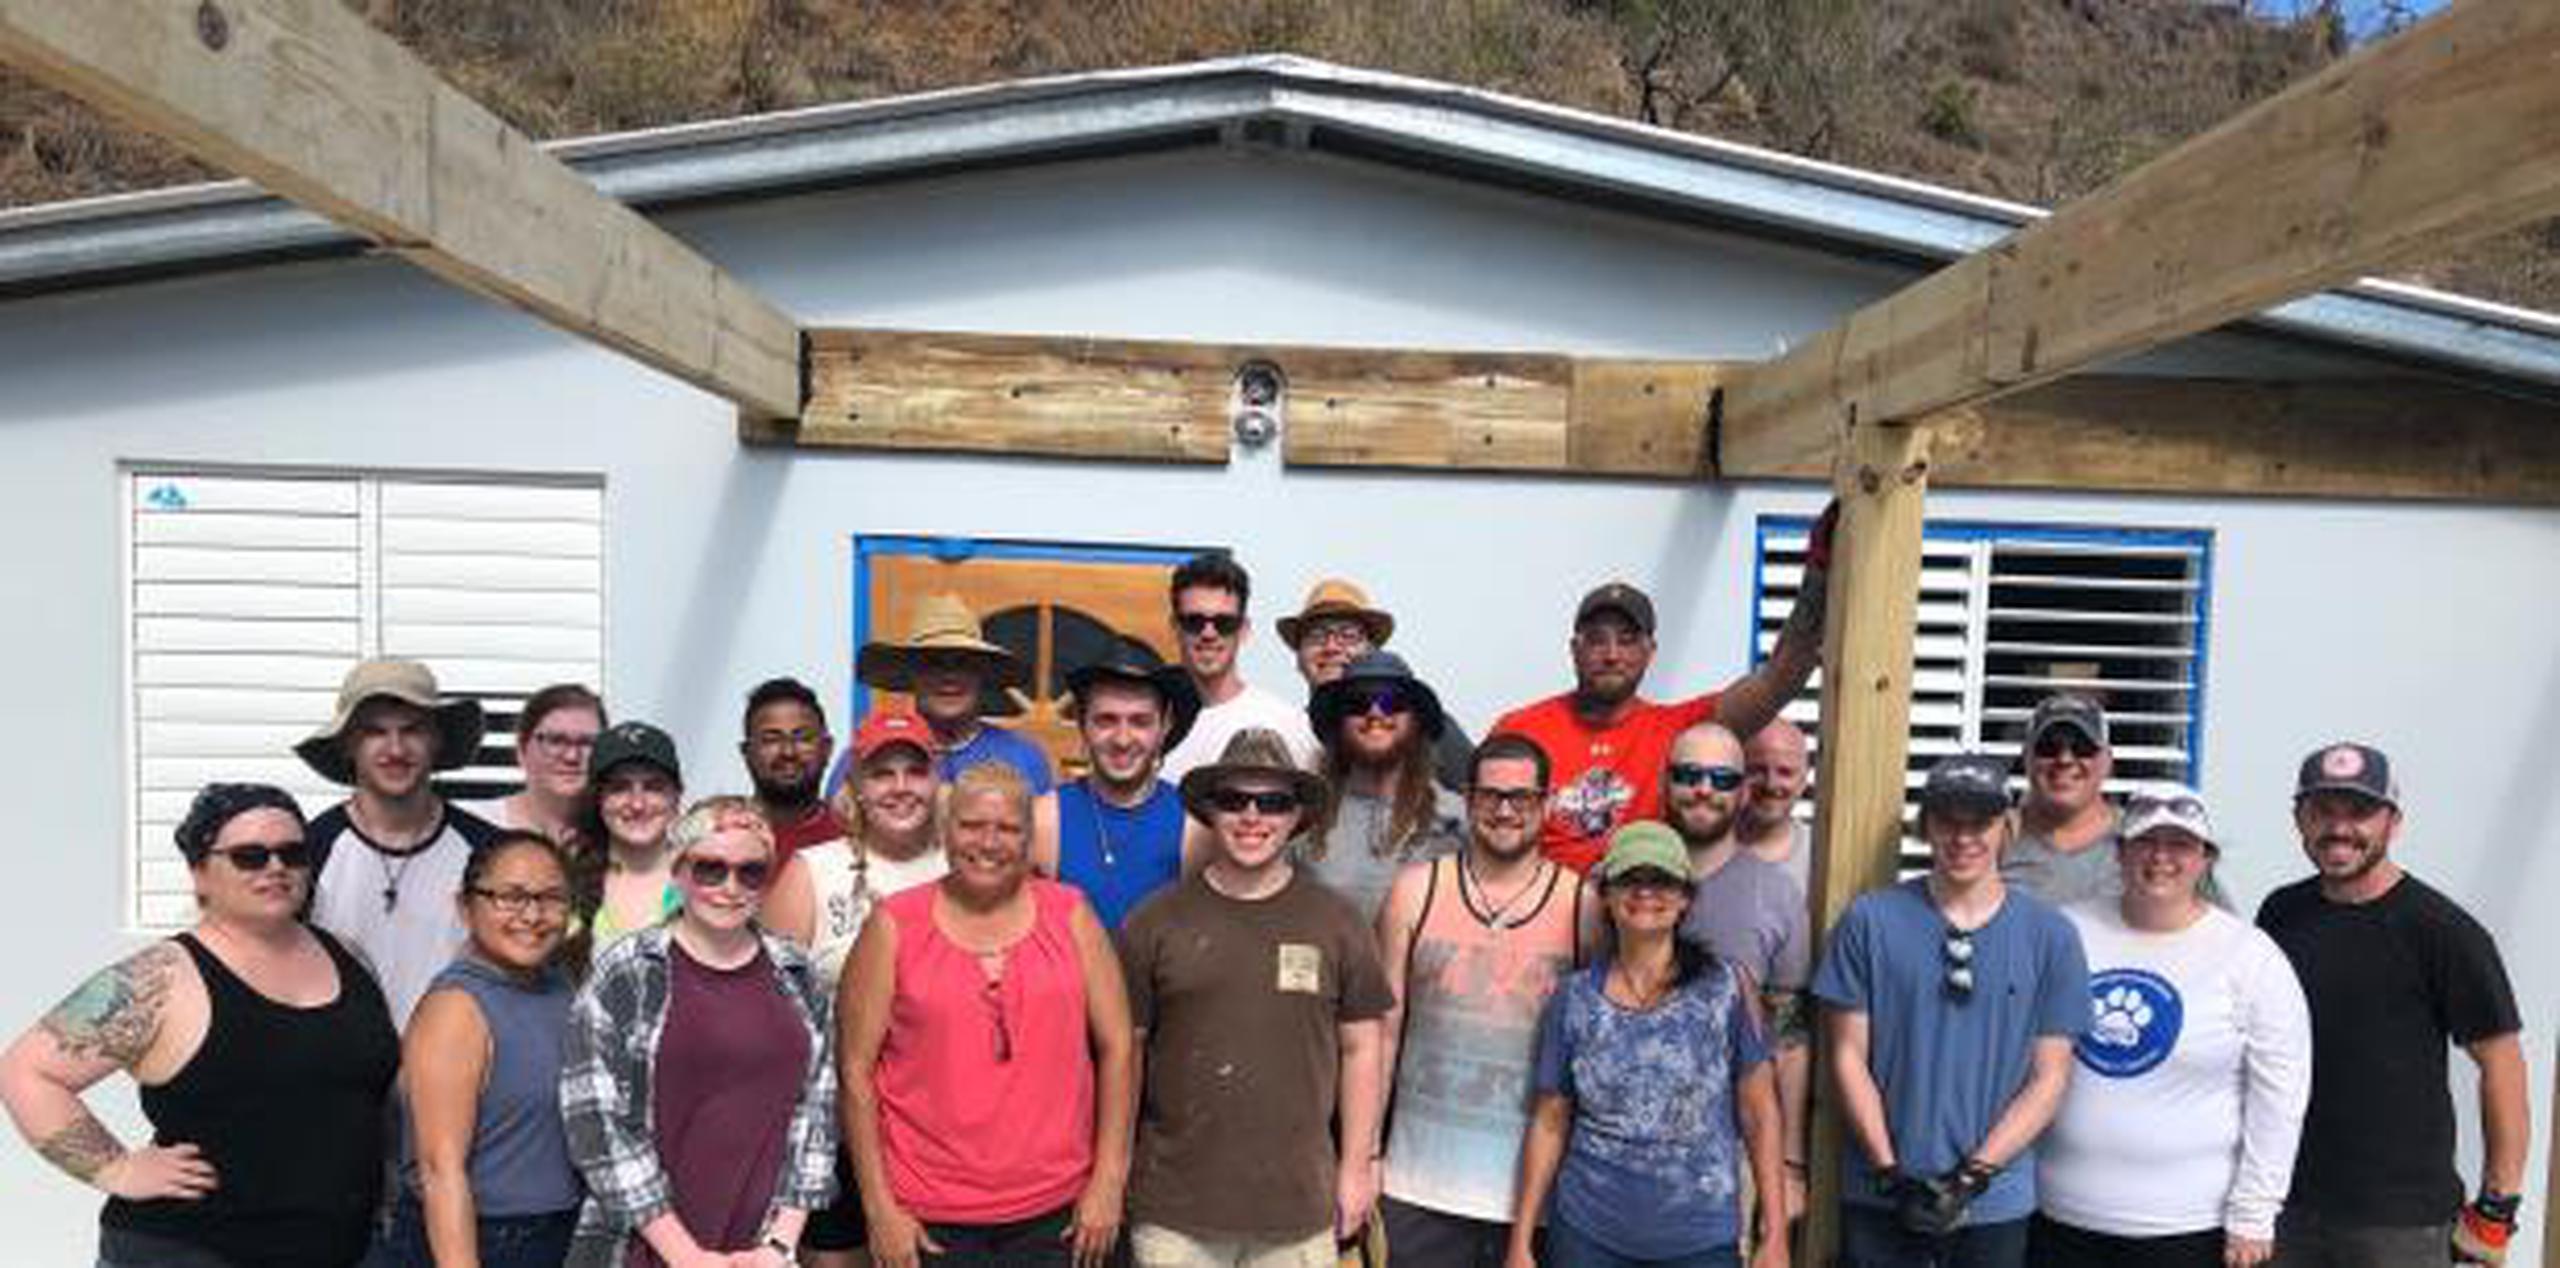 Los alumnos recaudaron $6,000 para terminar la casa de Maribel. (Para Suroeste / Sandra Torres)